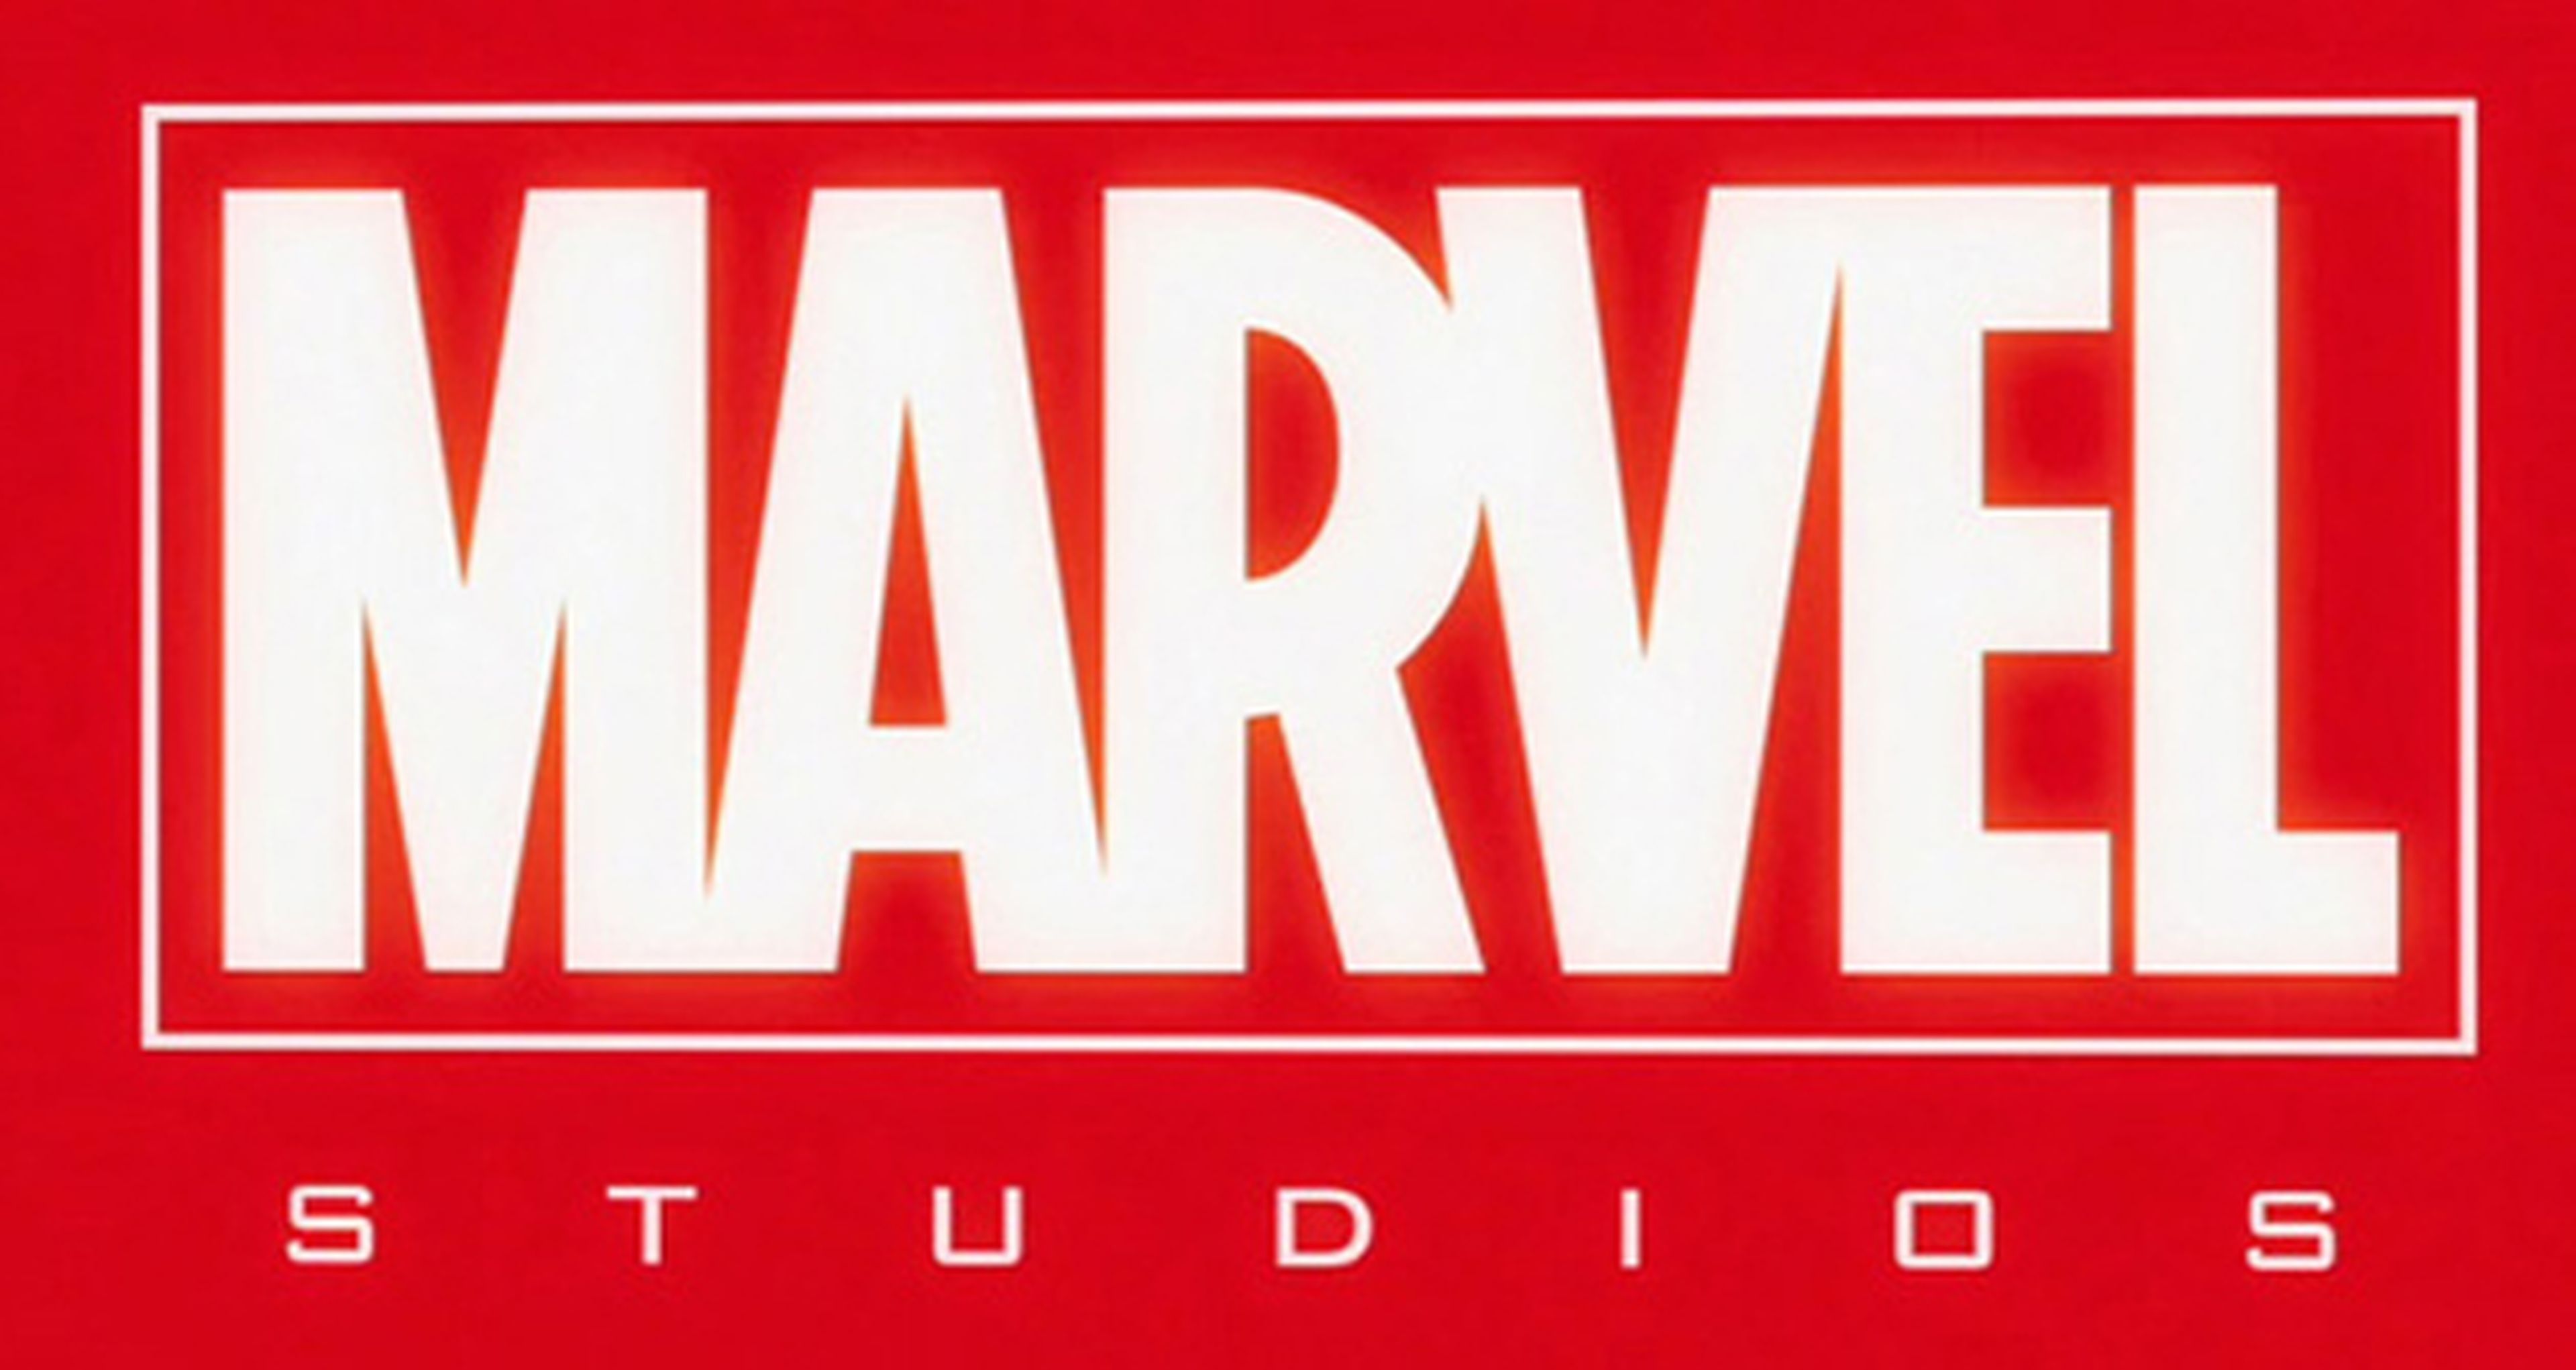 Aquí está el póster con el timeline de la Fase 3 de Marvel Studios